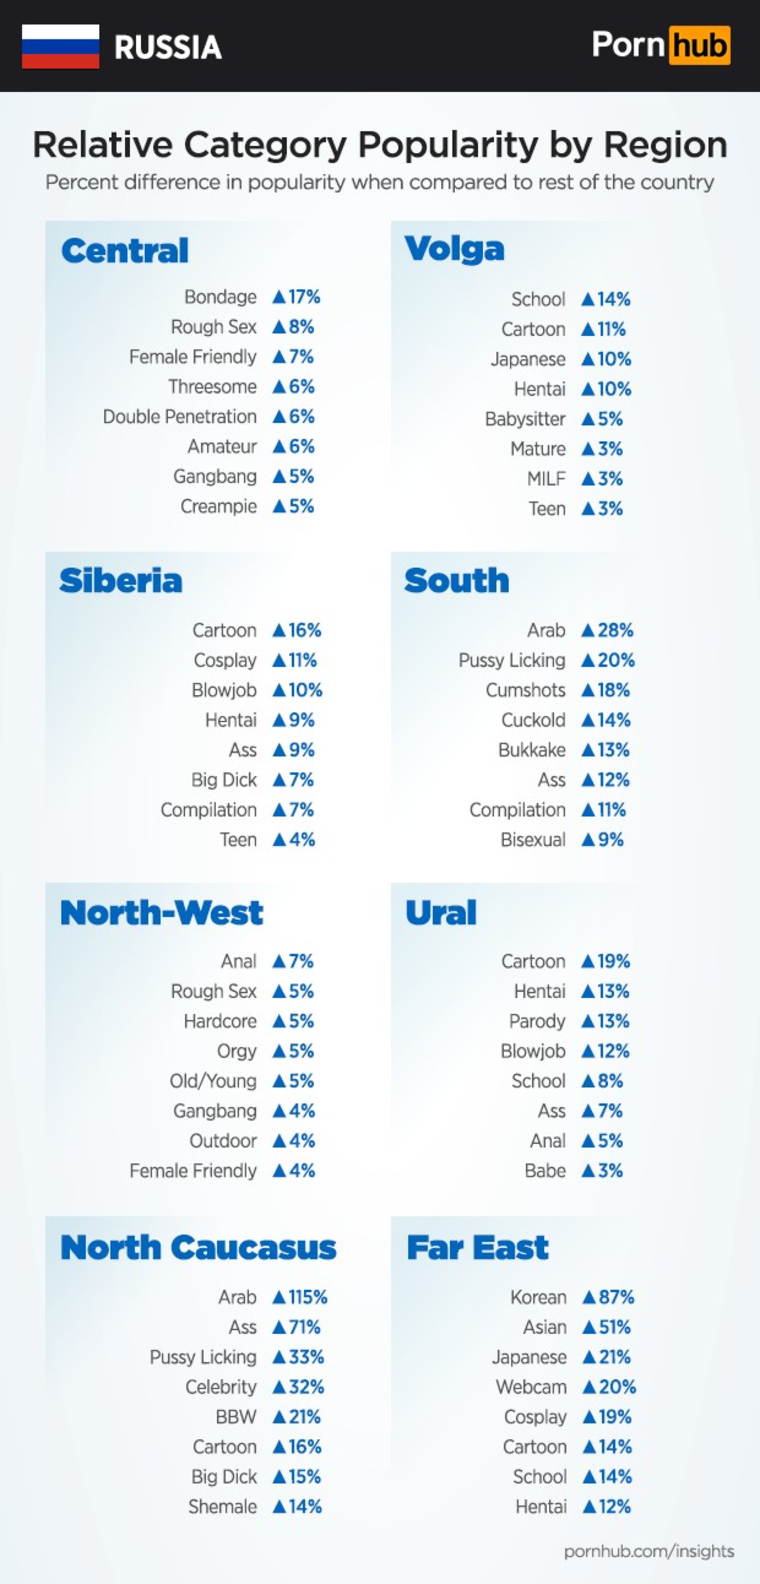 Эта таблица много объясняет о разнице интересов регионов России